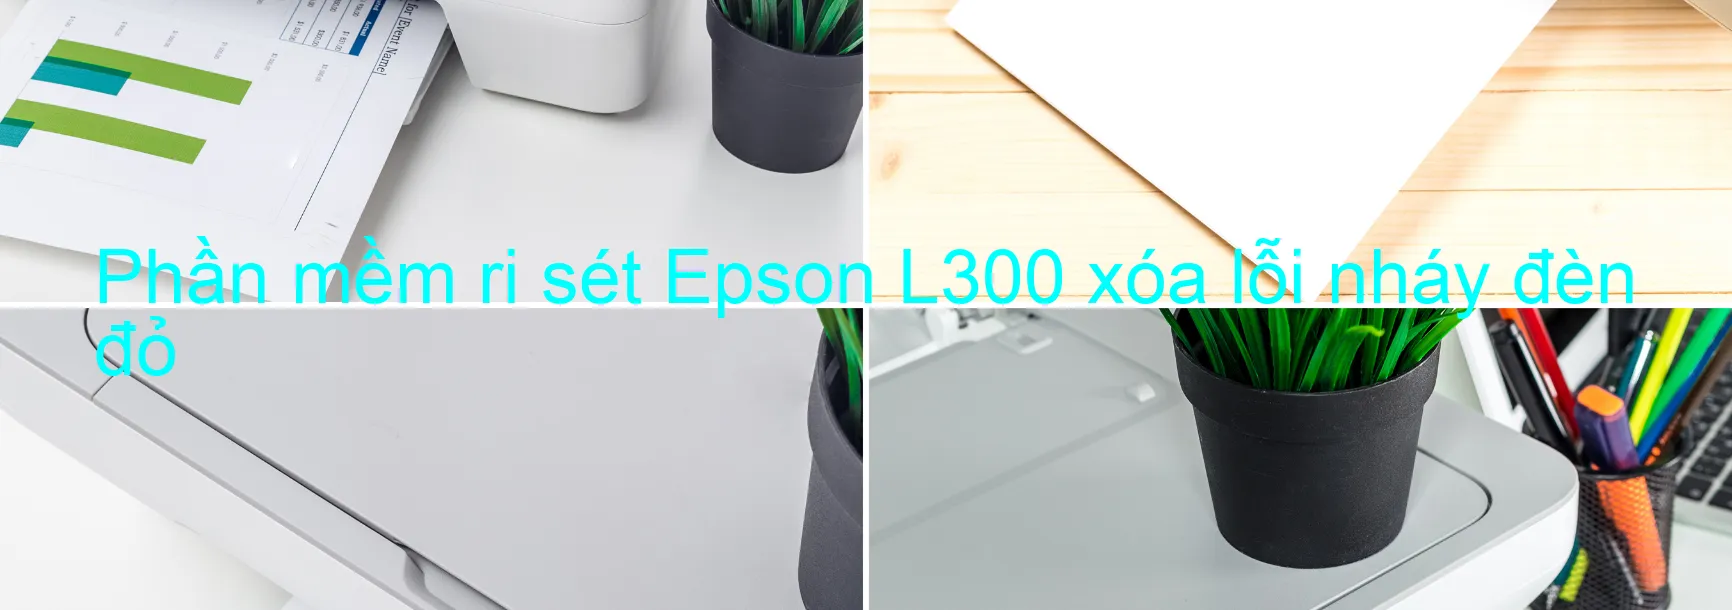 Phần mềm reset Epson L300 xóa lỗi nháy đèn đỏ